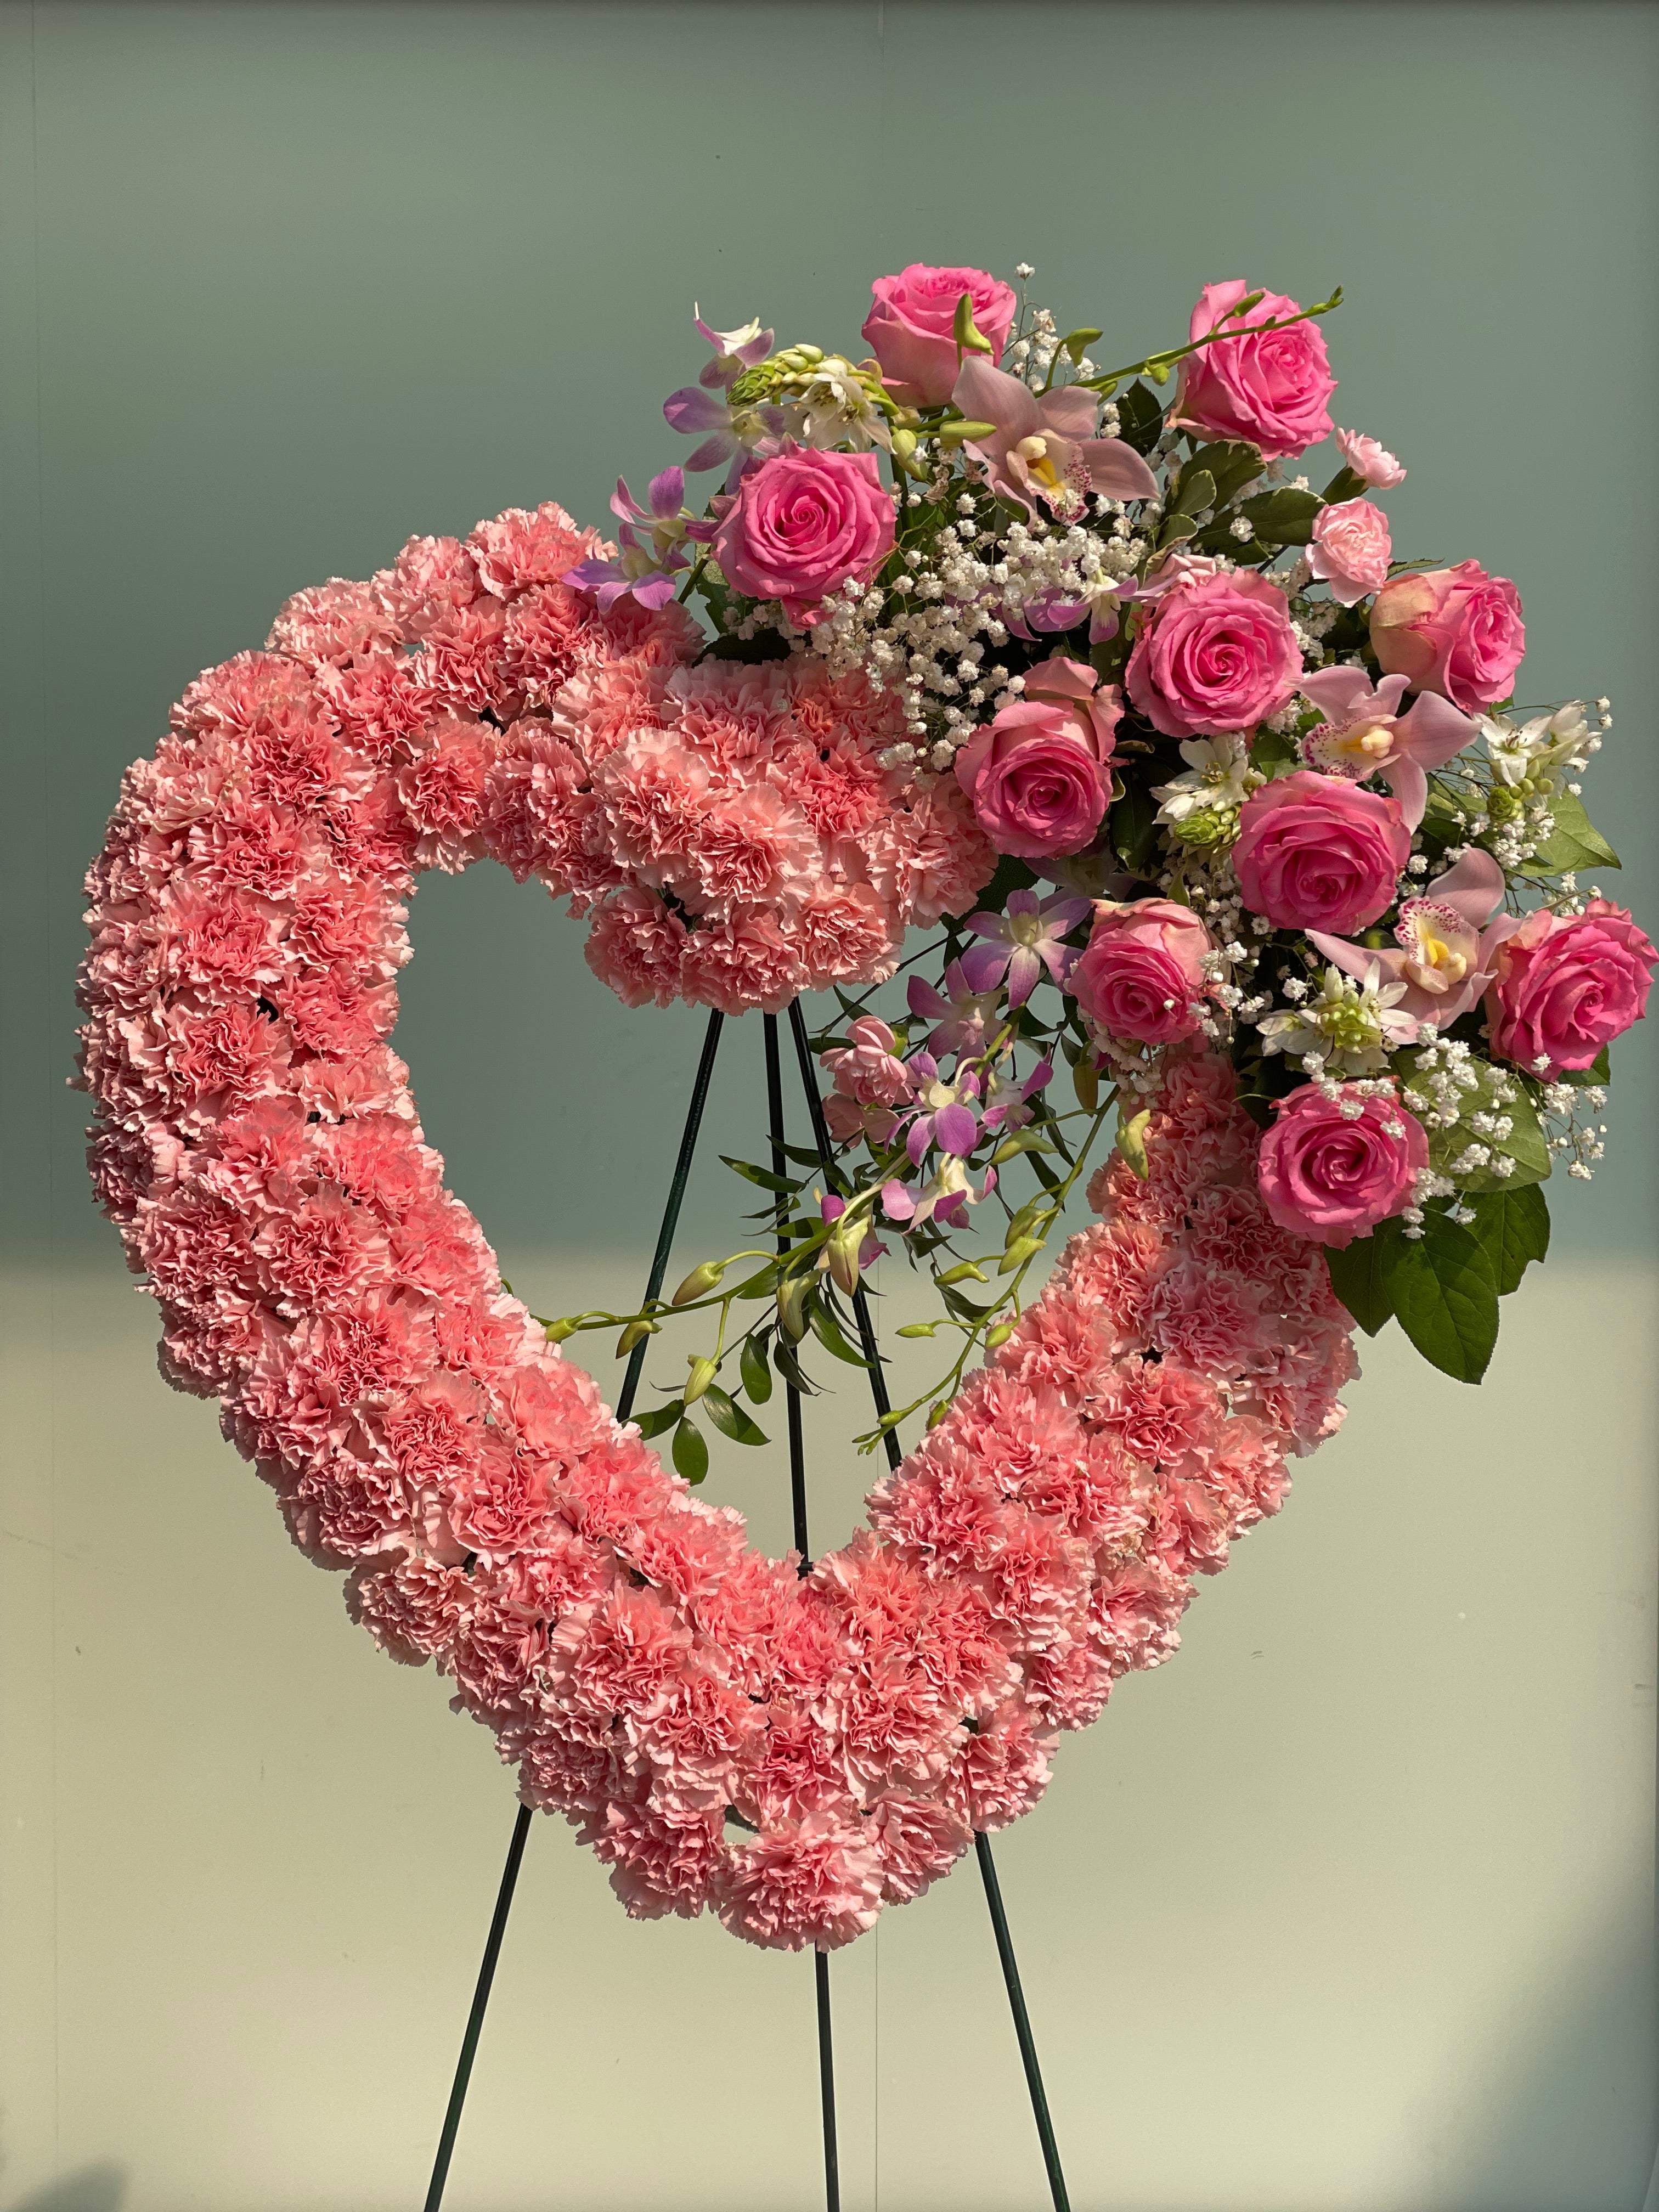 Beloved Tribute Heart Wreath